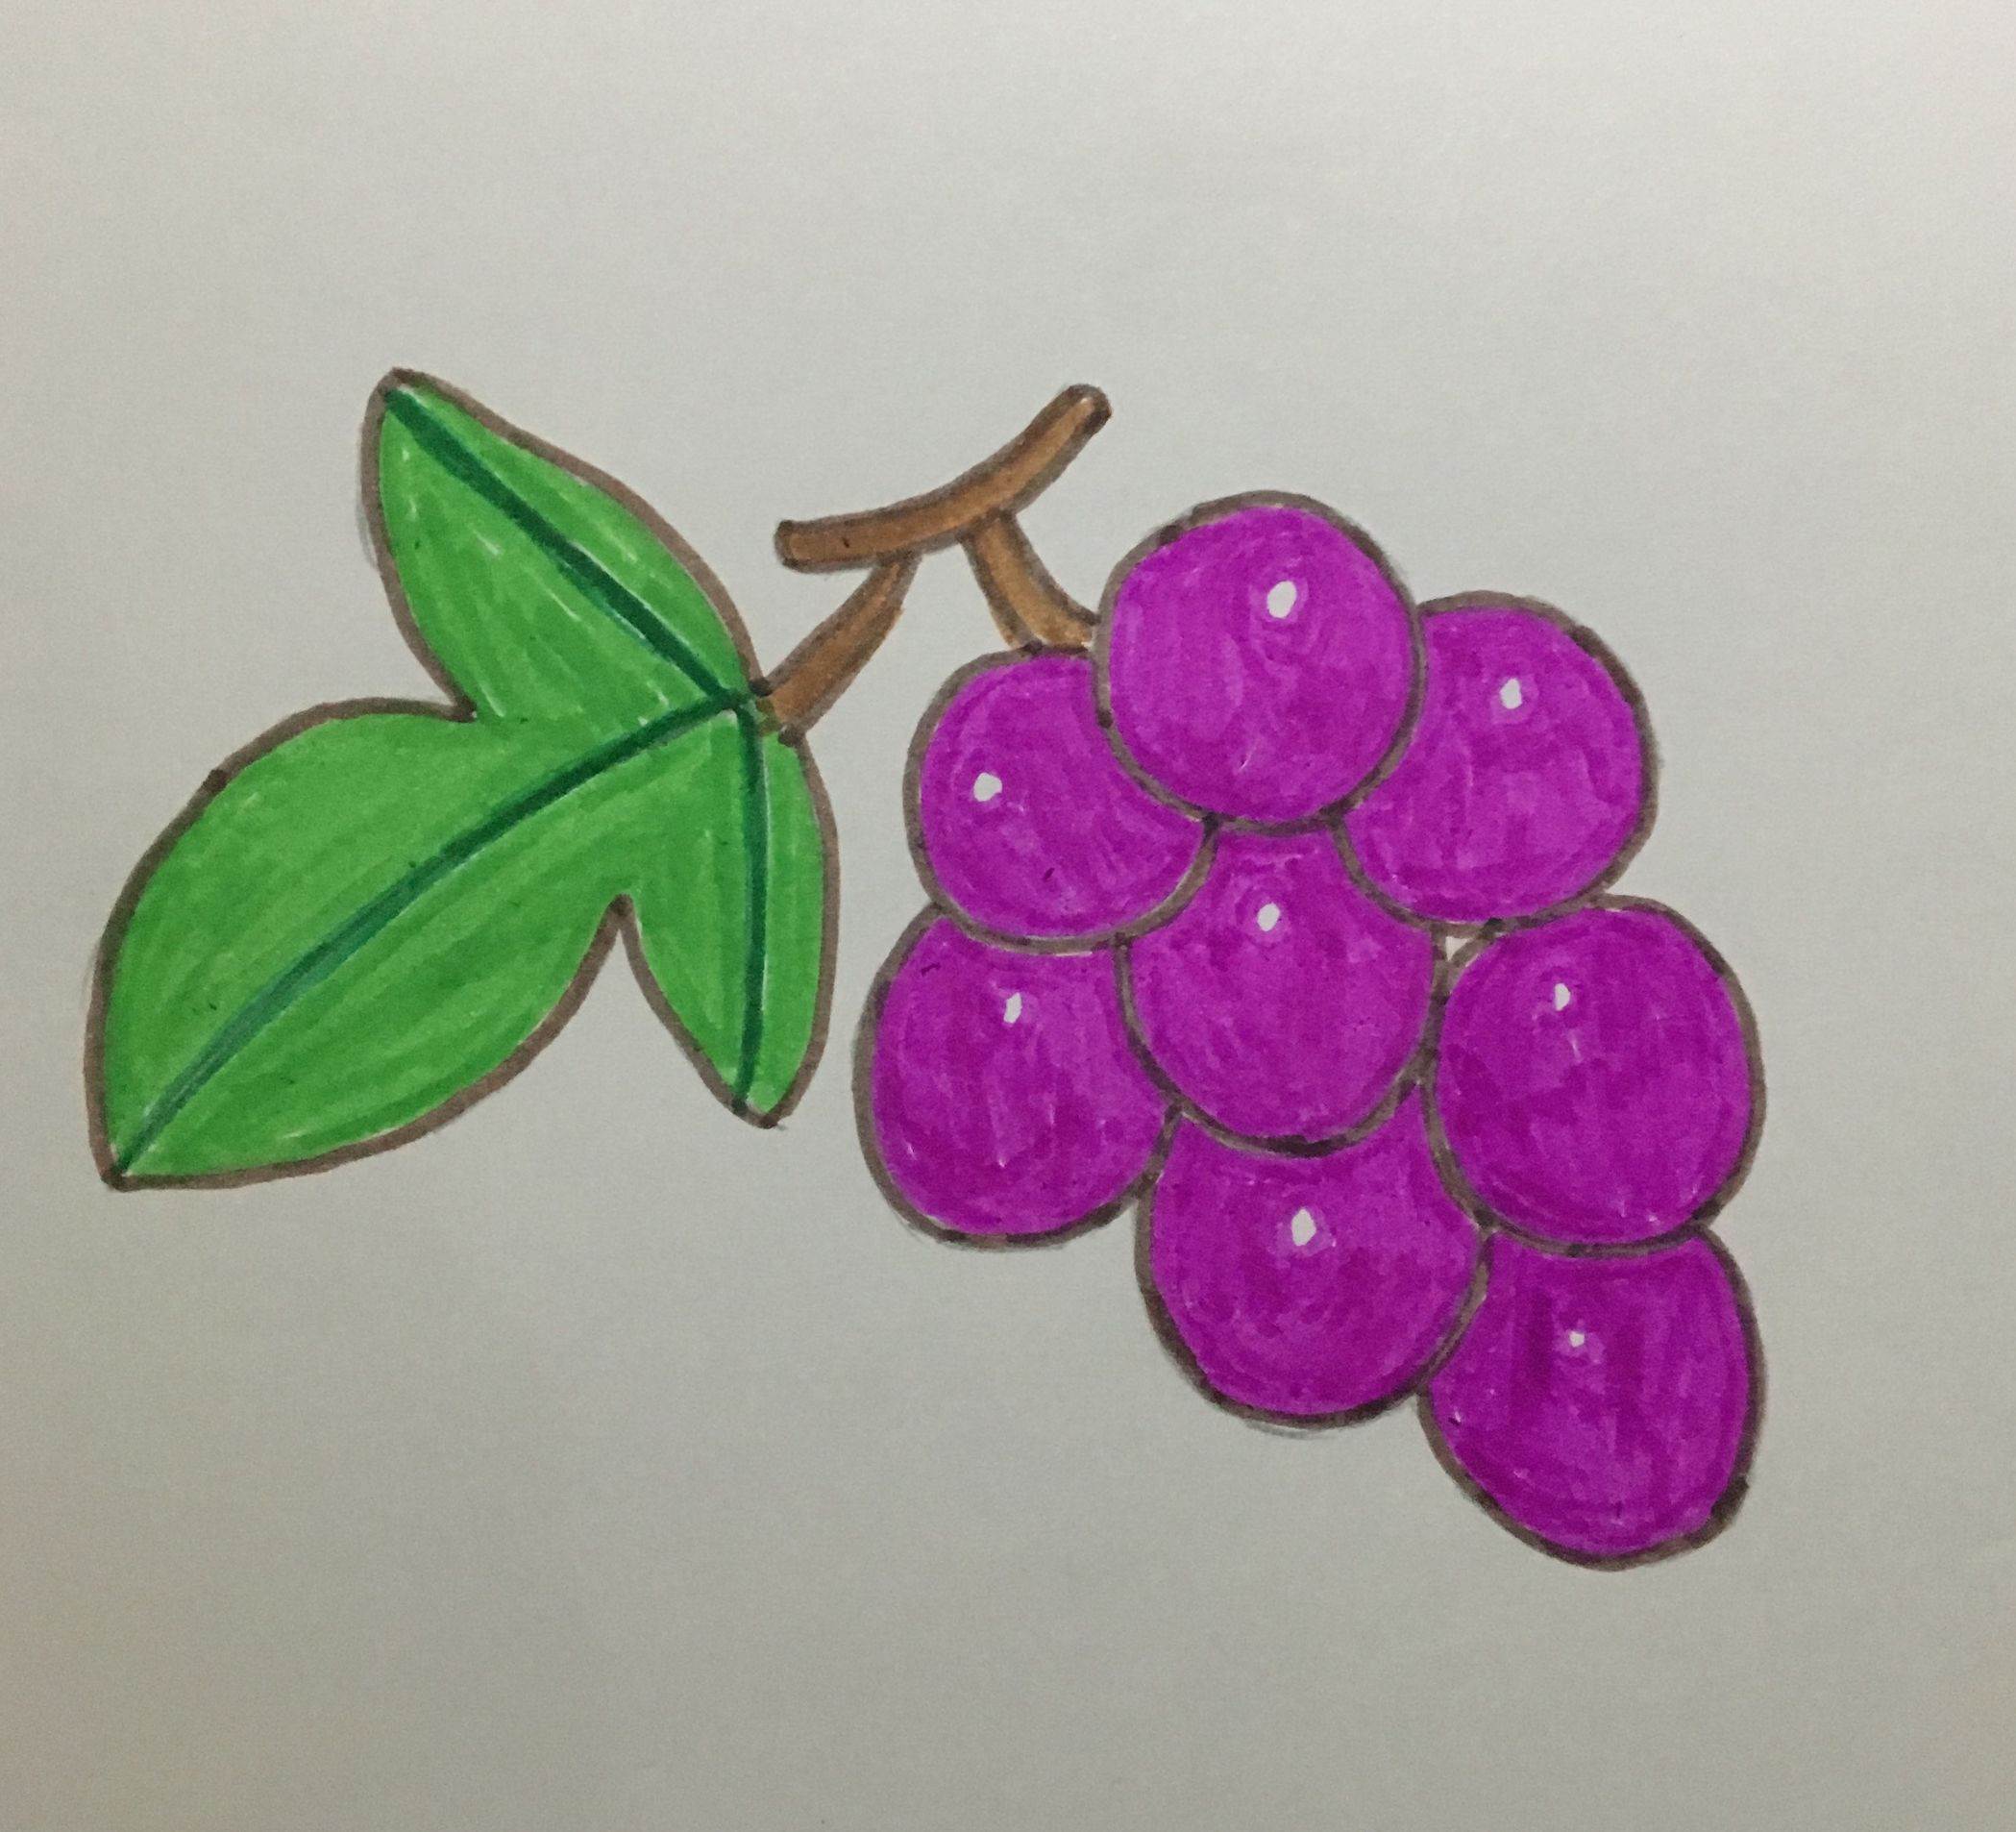 紫色葡萄 简笔画图片